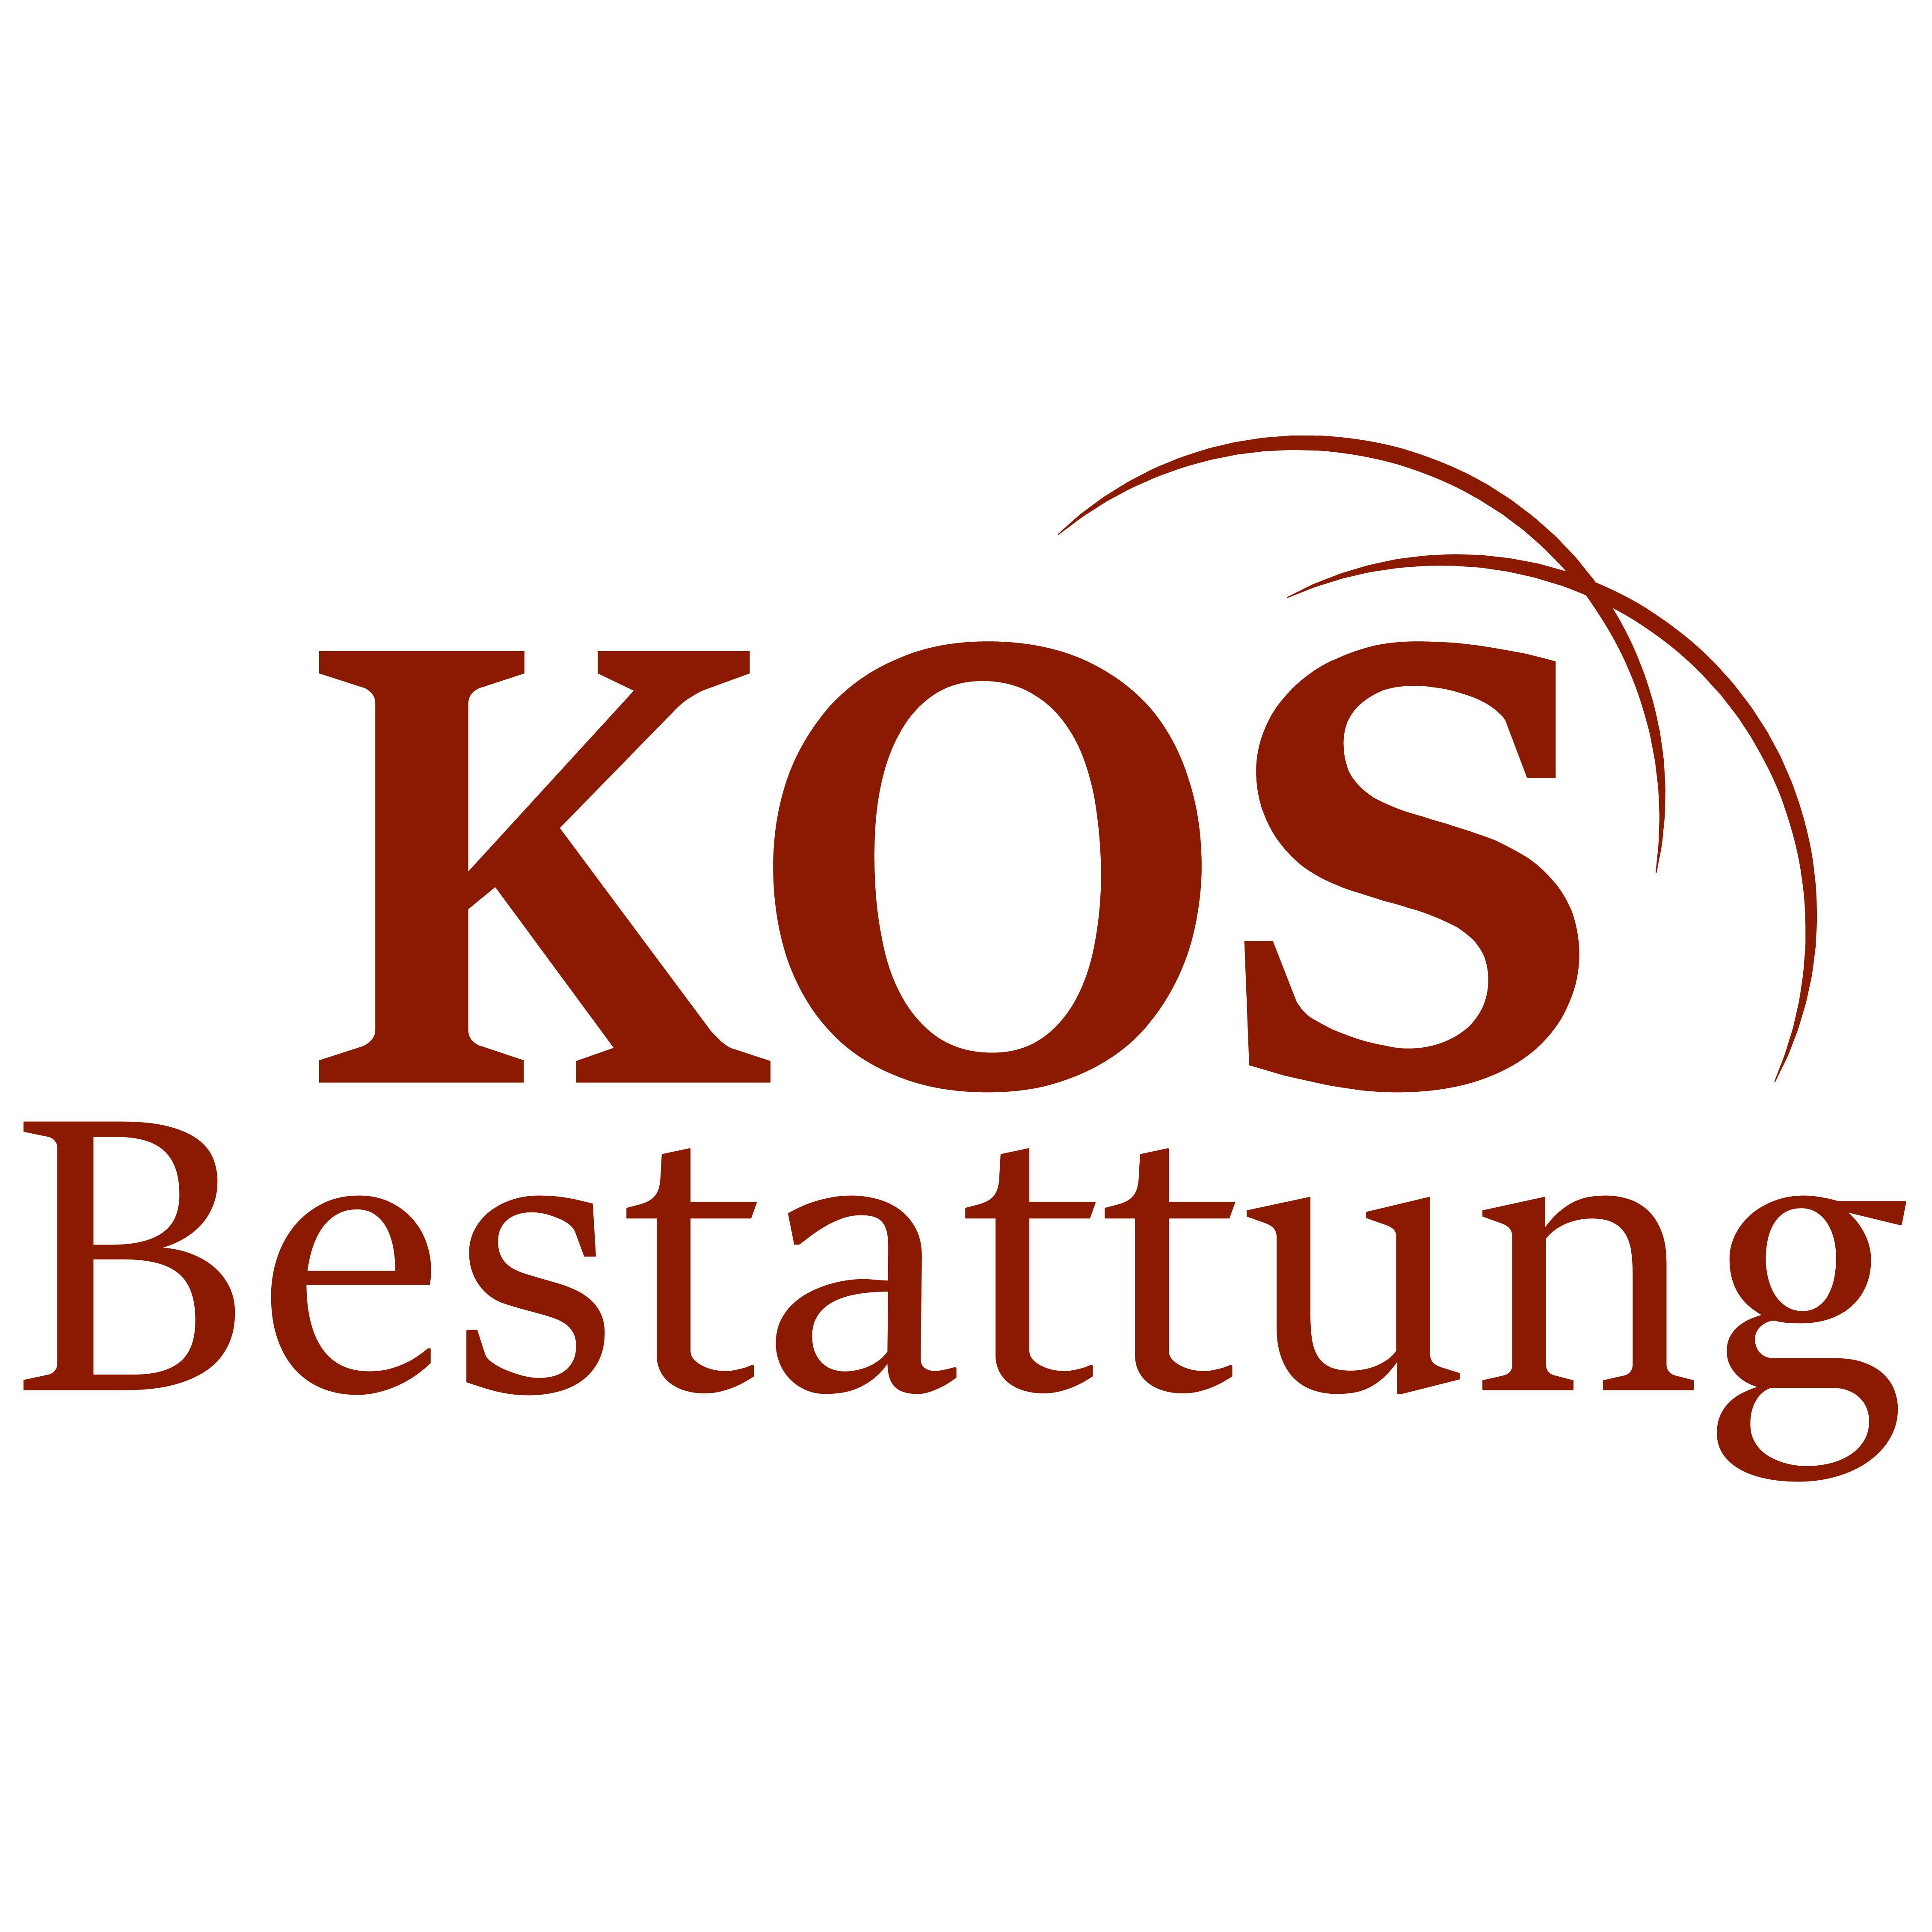 Bestattung Kos Wolfsberg in Kärnten Logo